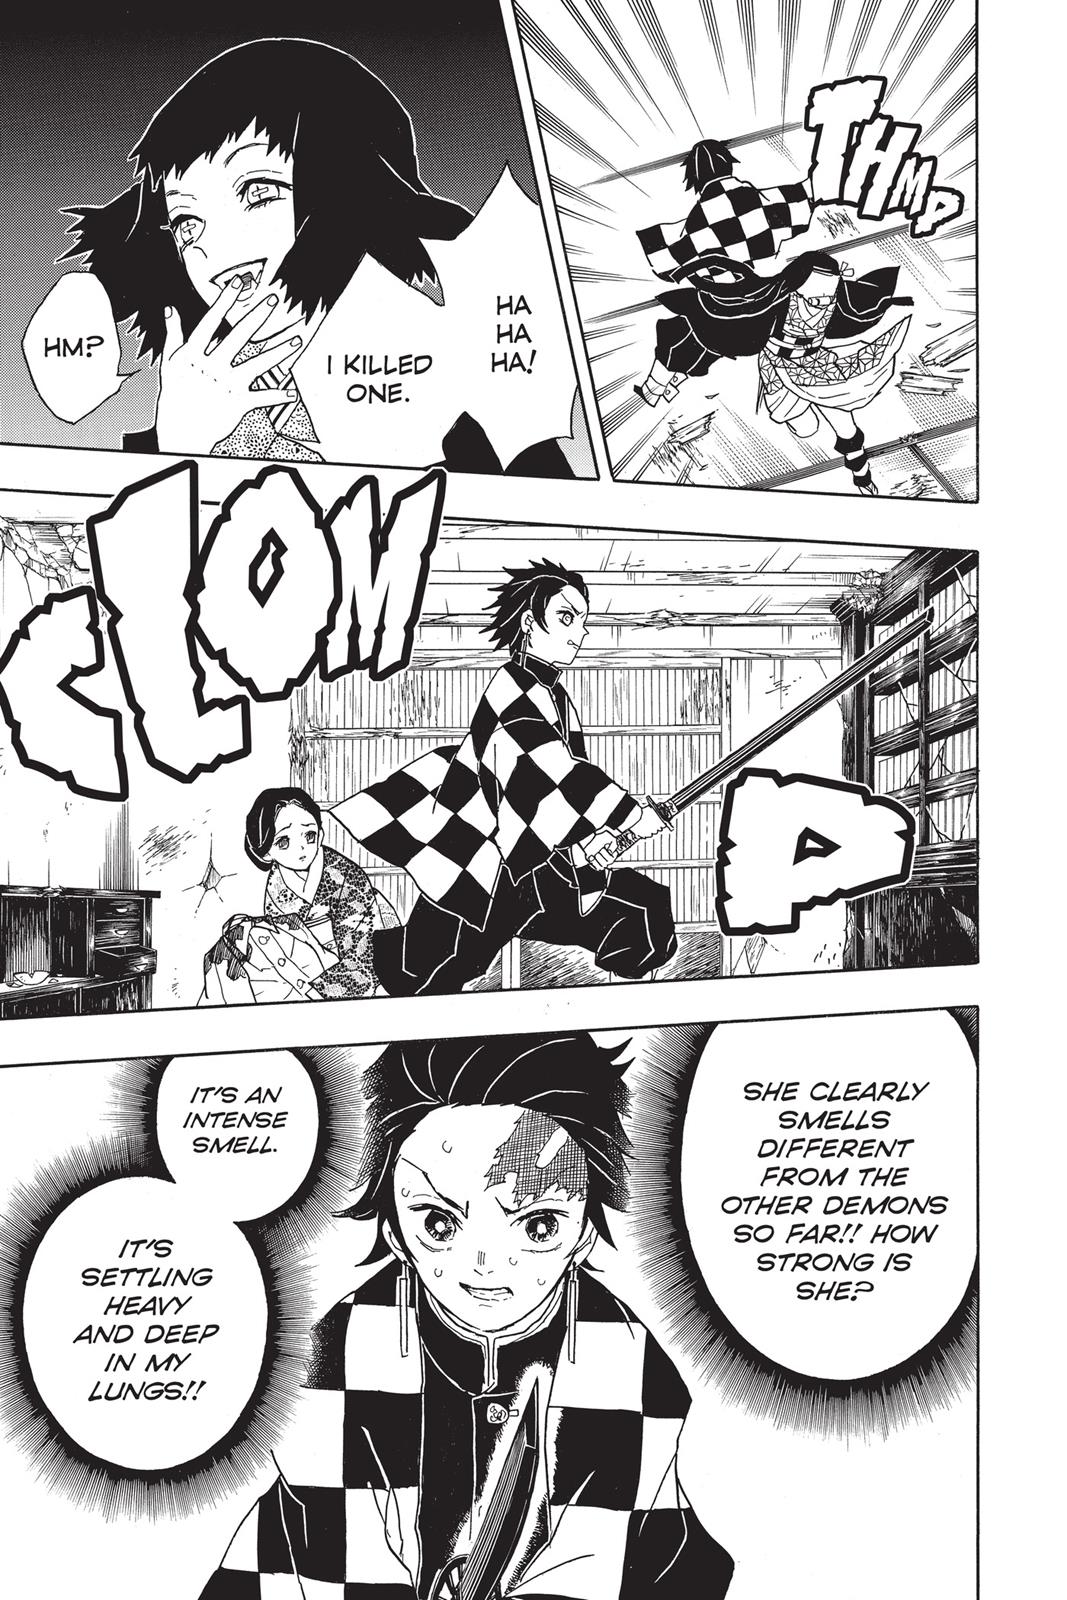 Demon Slayer Manga Manga Chapter - 16 - image 7